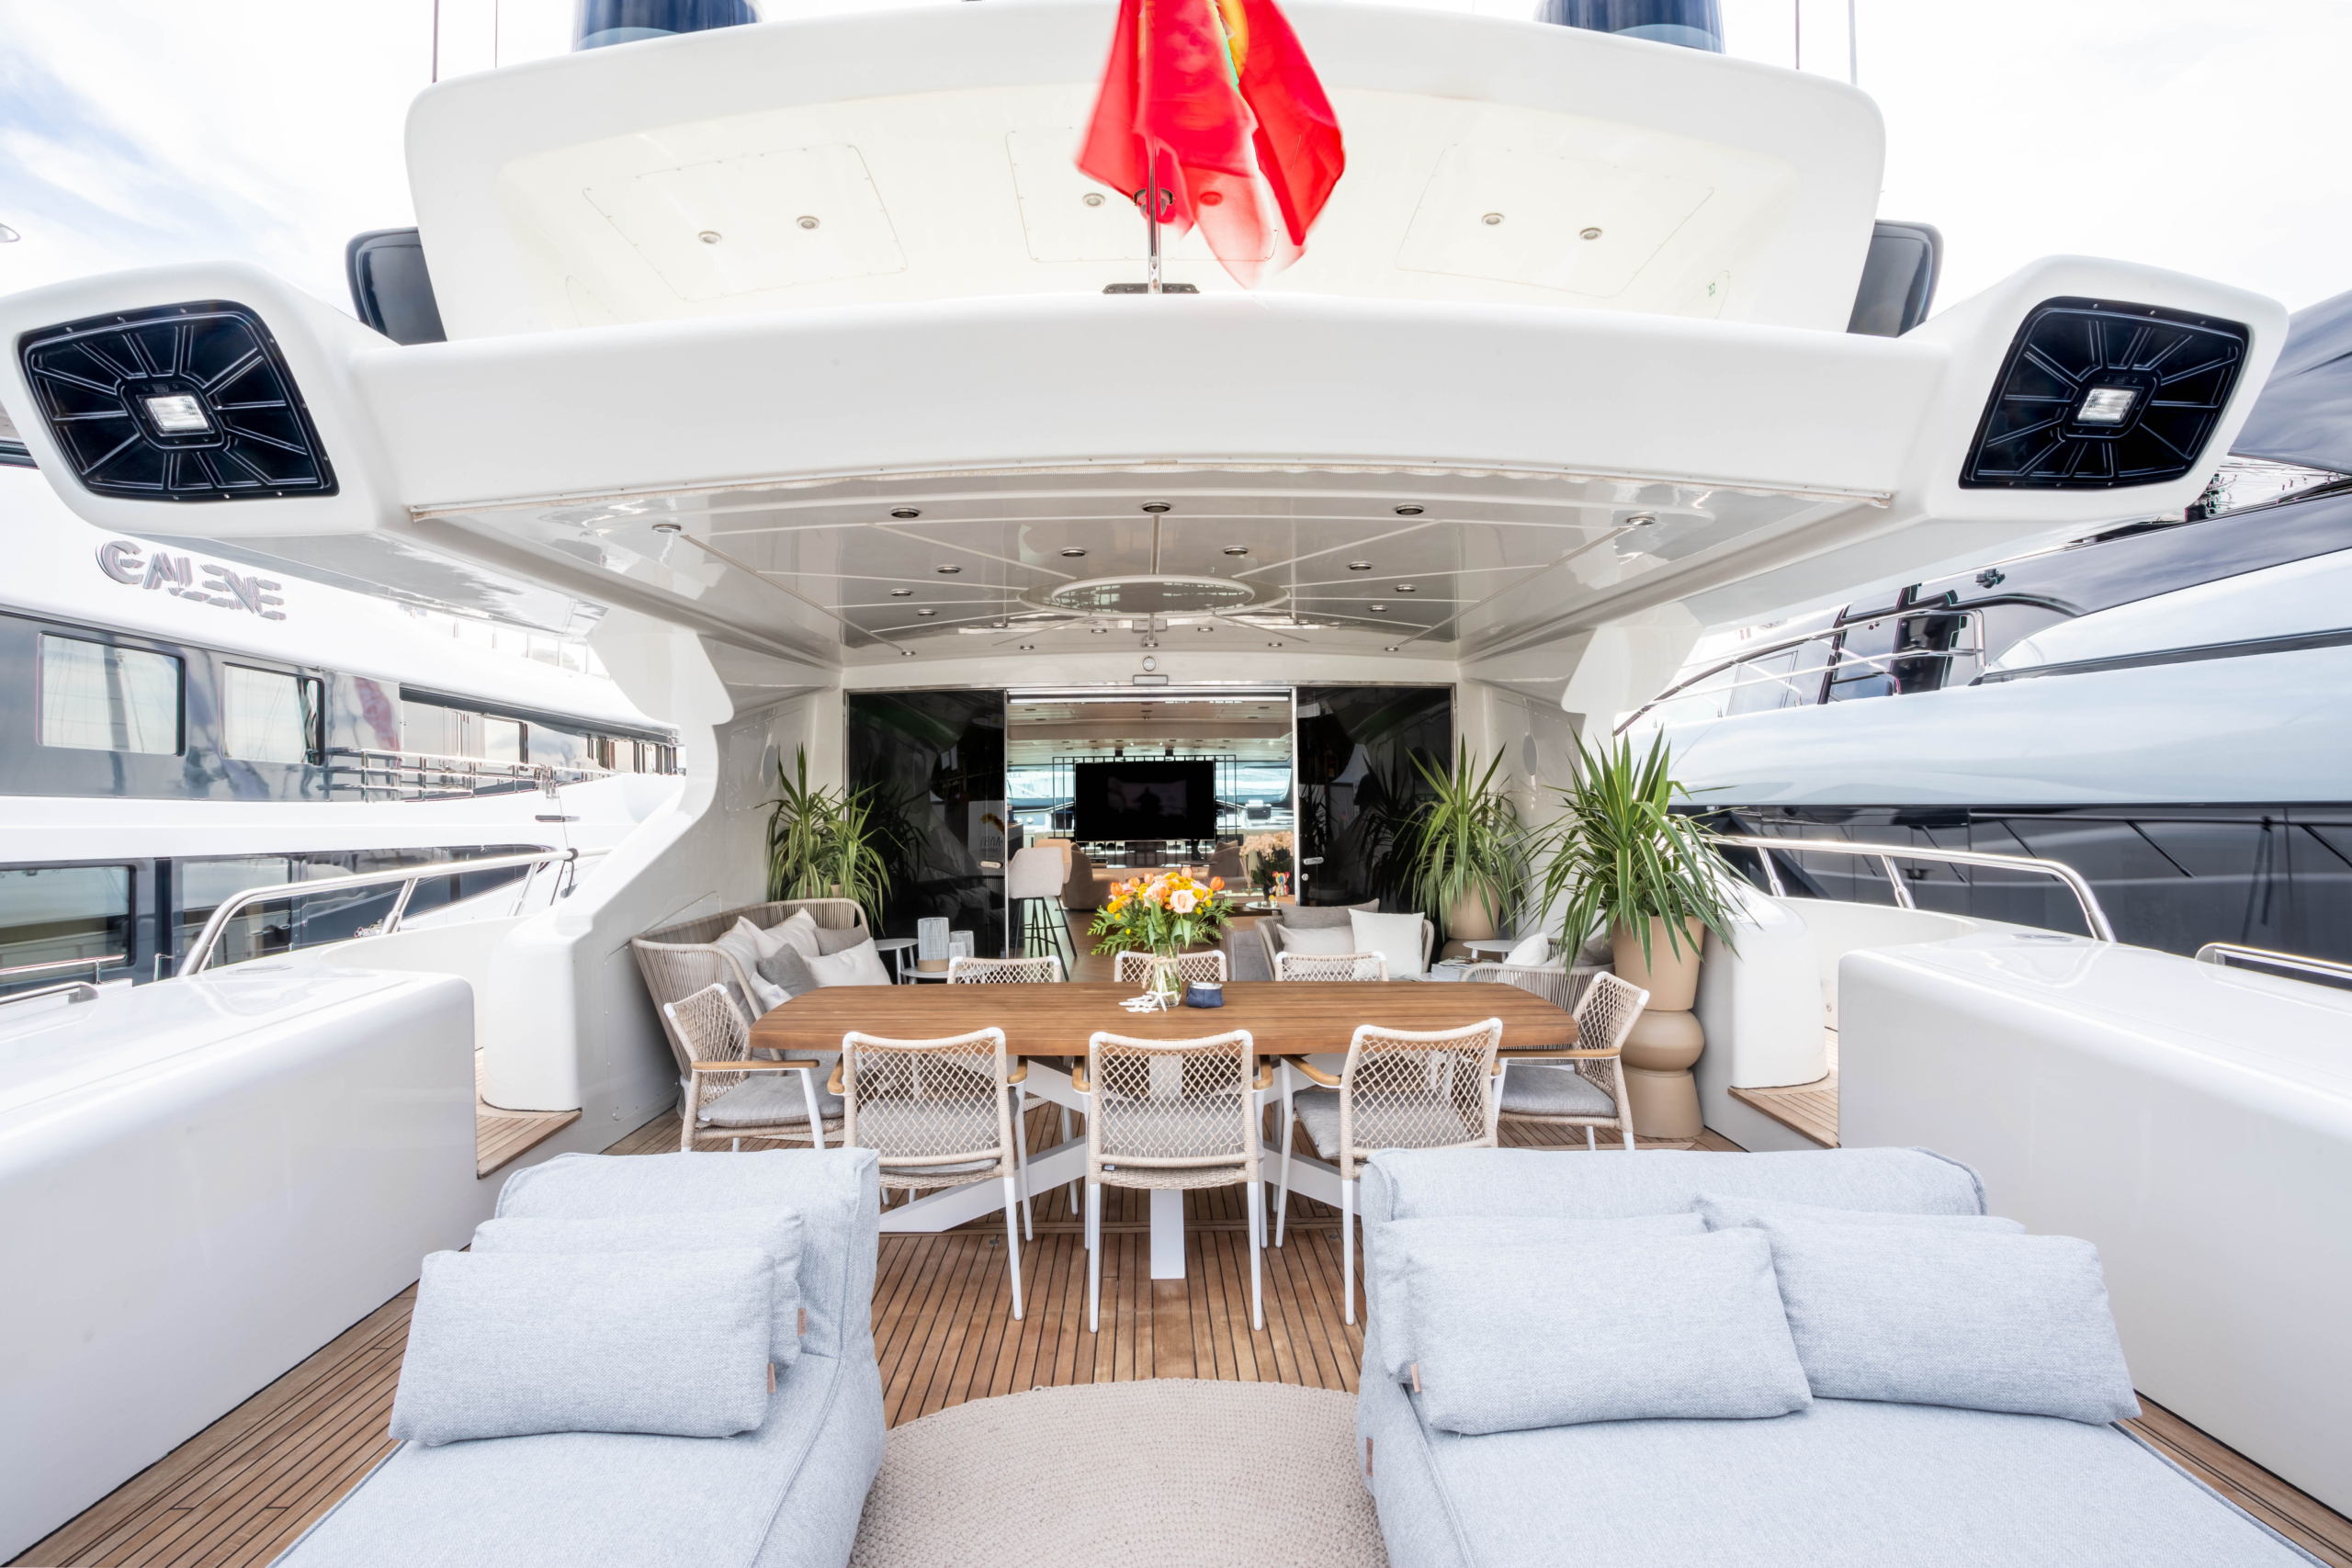 Shane-Mangusta-Yacht-For-Charter-Ibiza-Sun-Deck